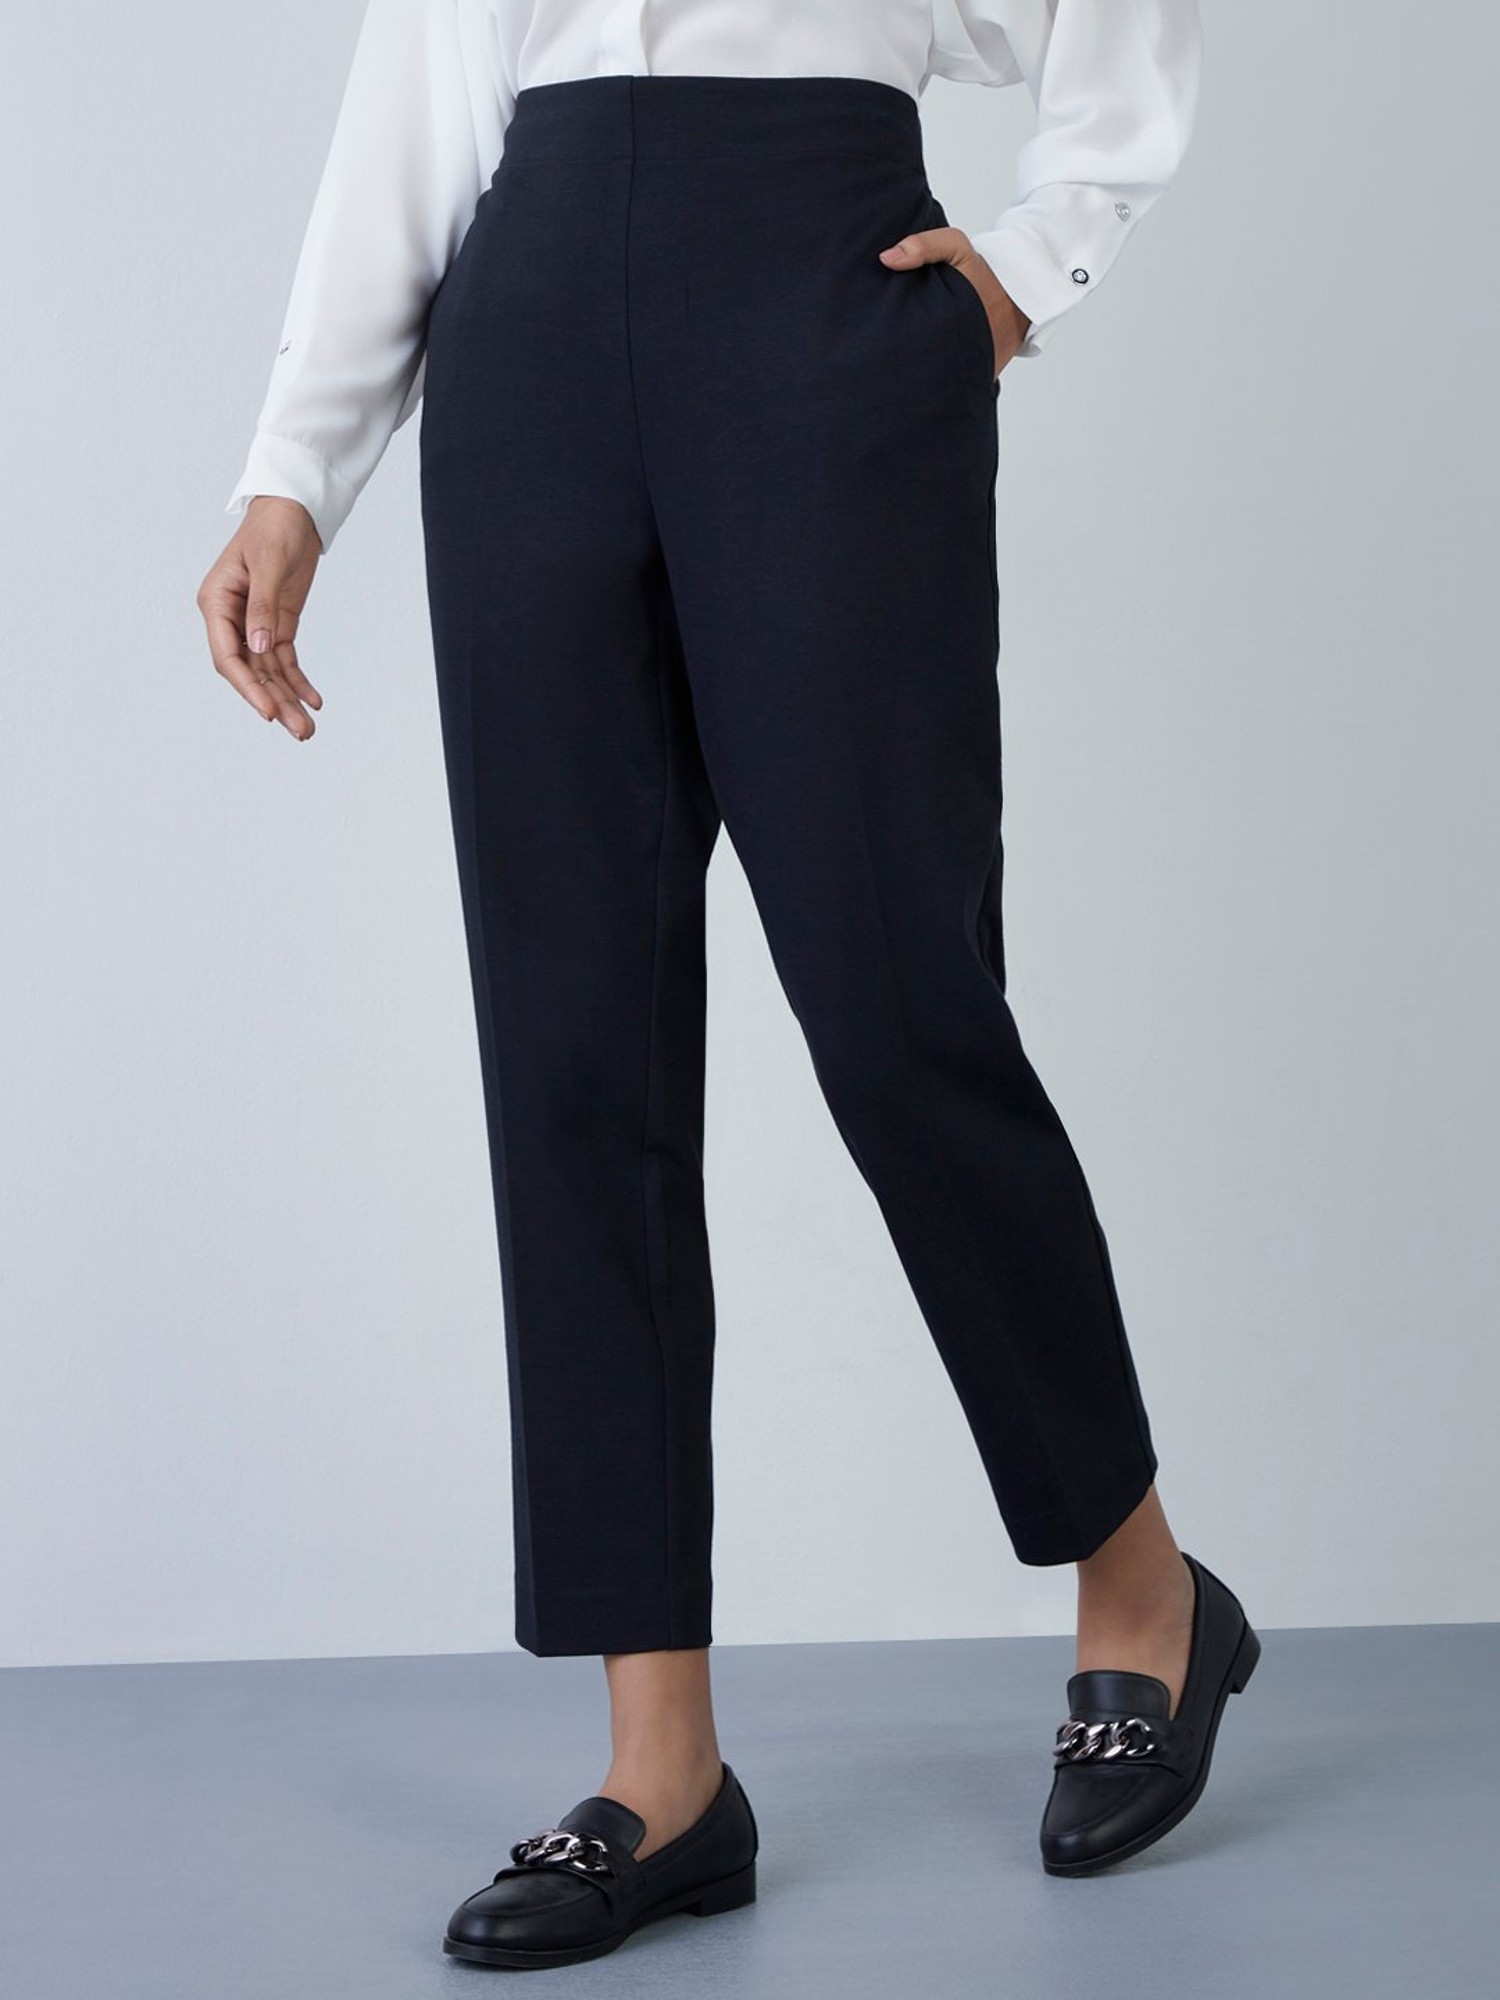 Buy Black Trousers  Pants for Men by SPYKAR Online  Ajiocom